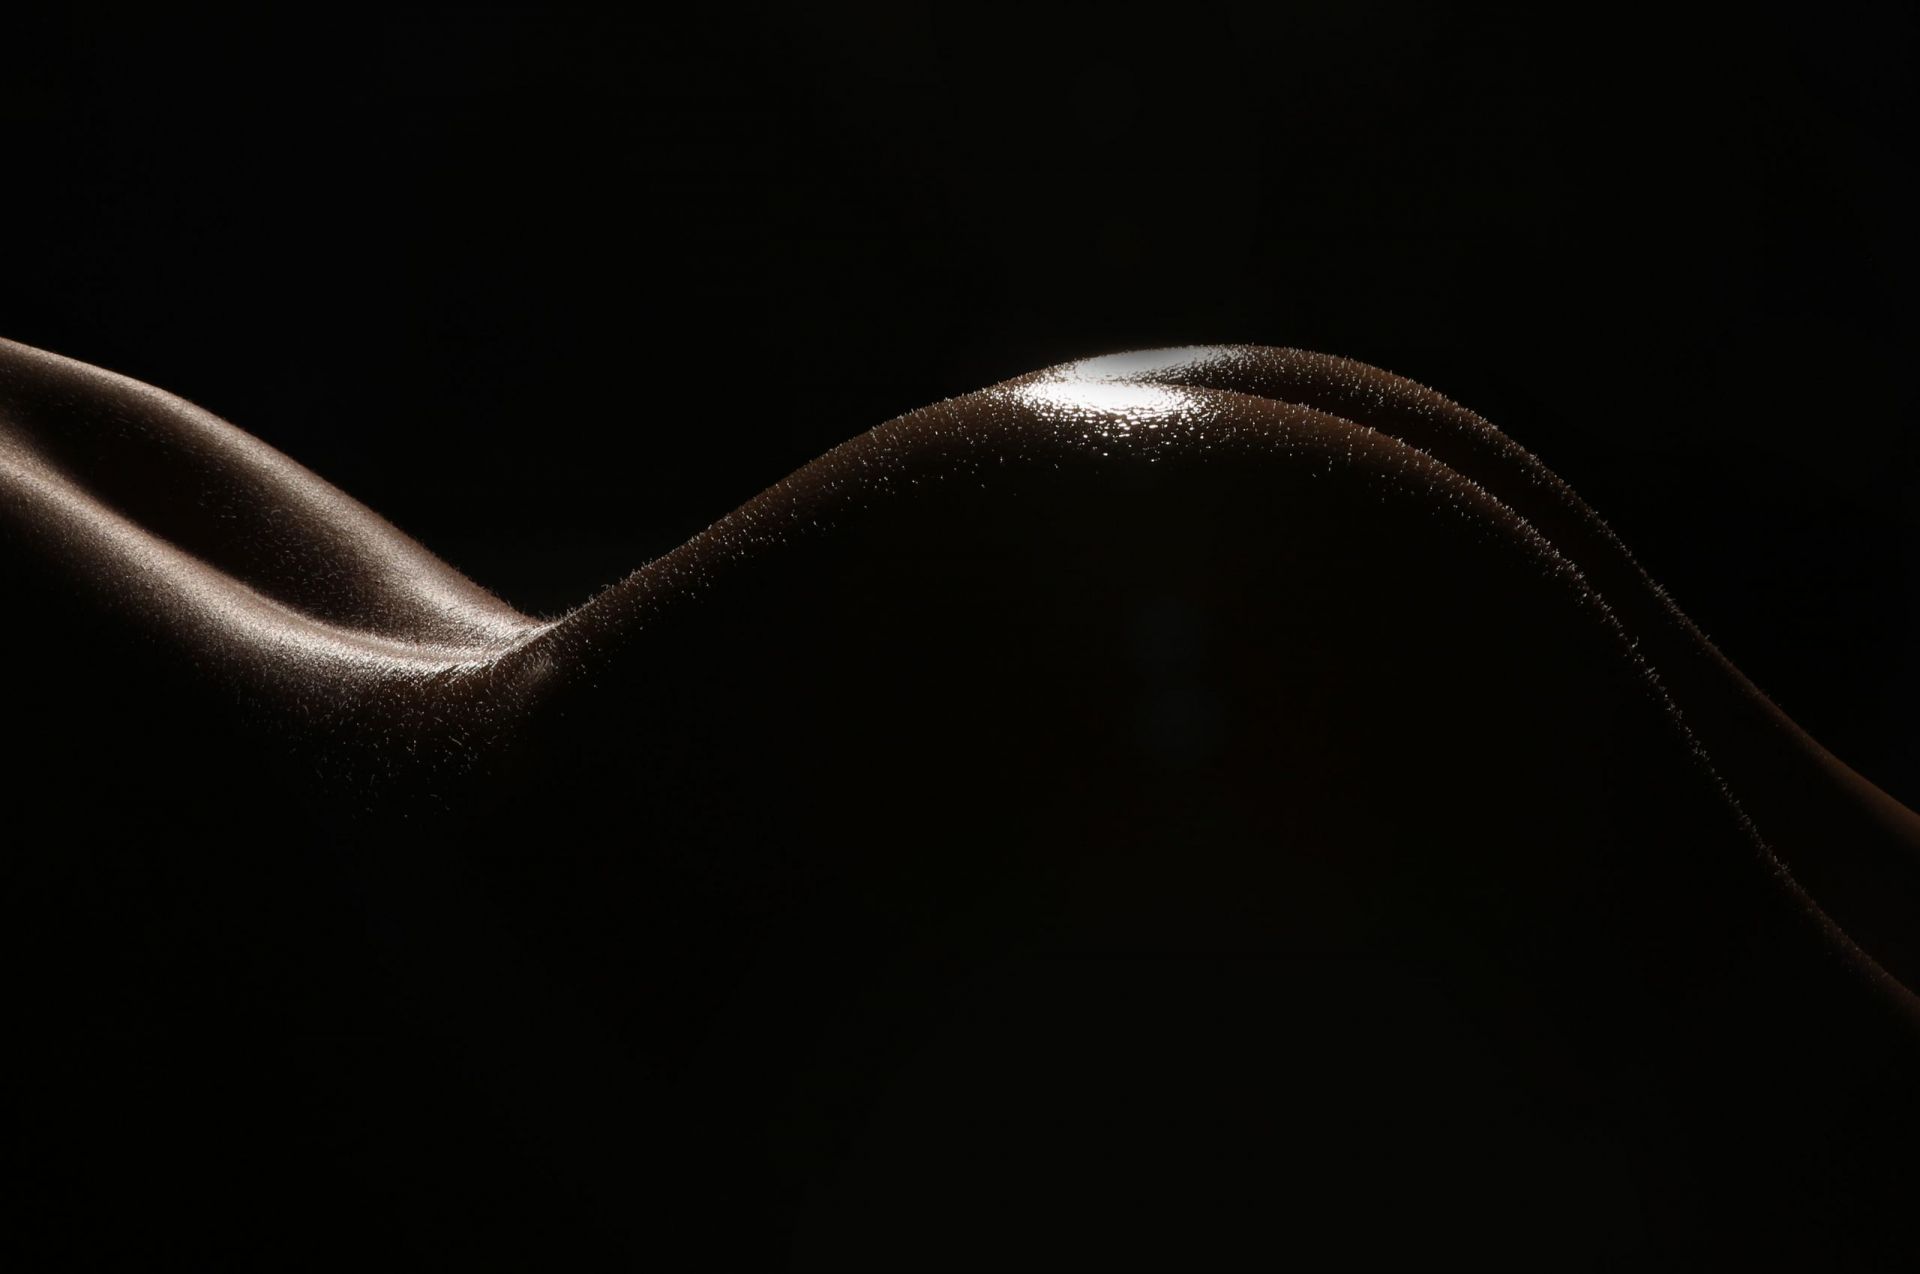 Erotic naked bum / ass photoshoot